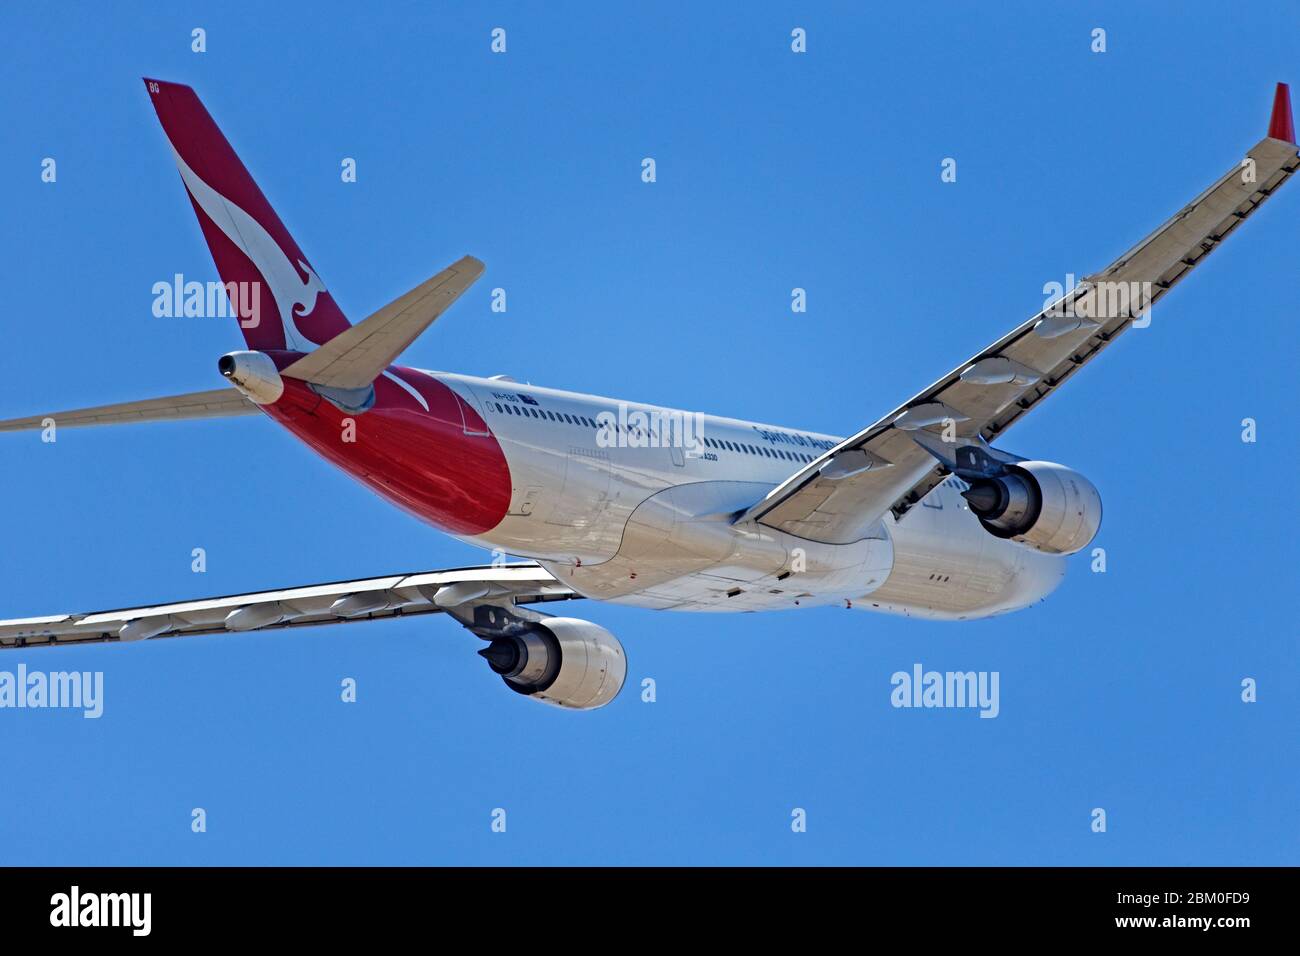 Qantas Airbus A330-203 in flight Stock Photo